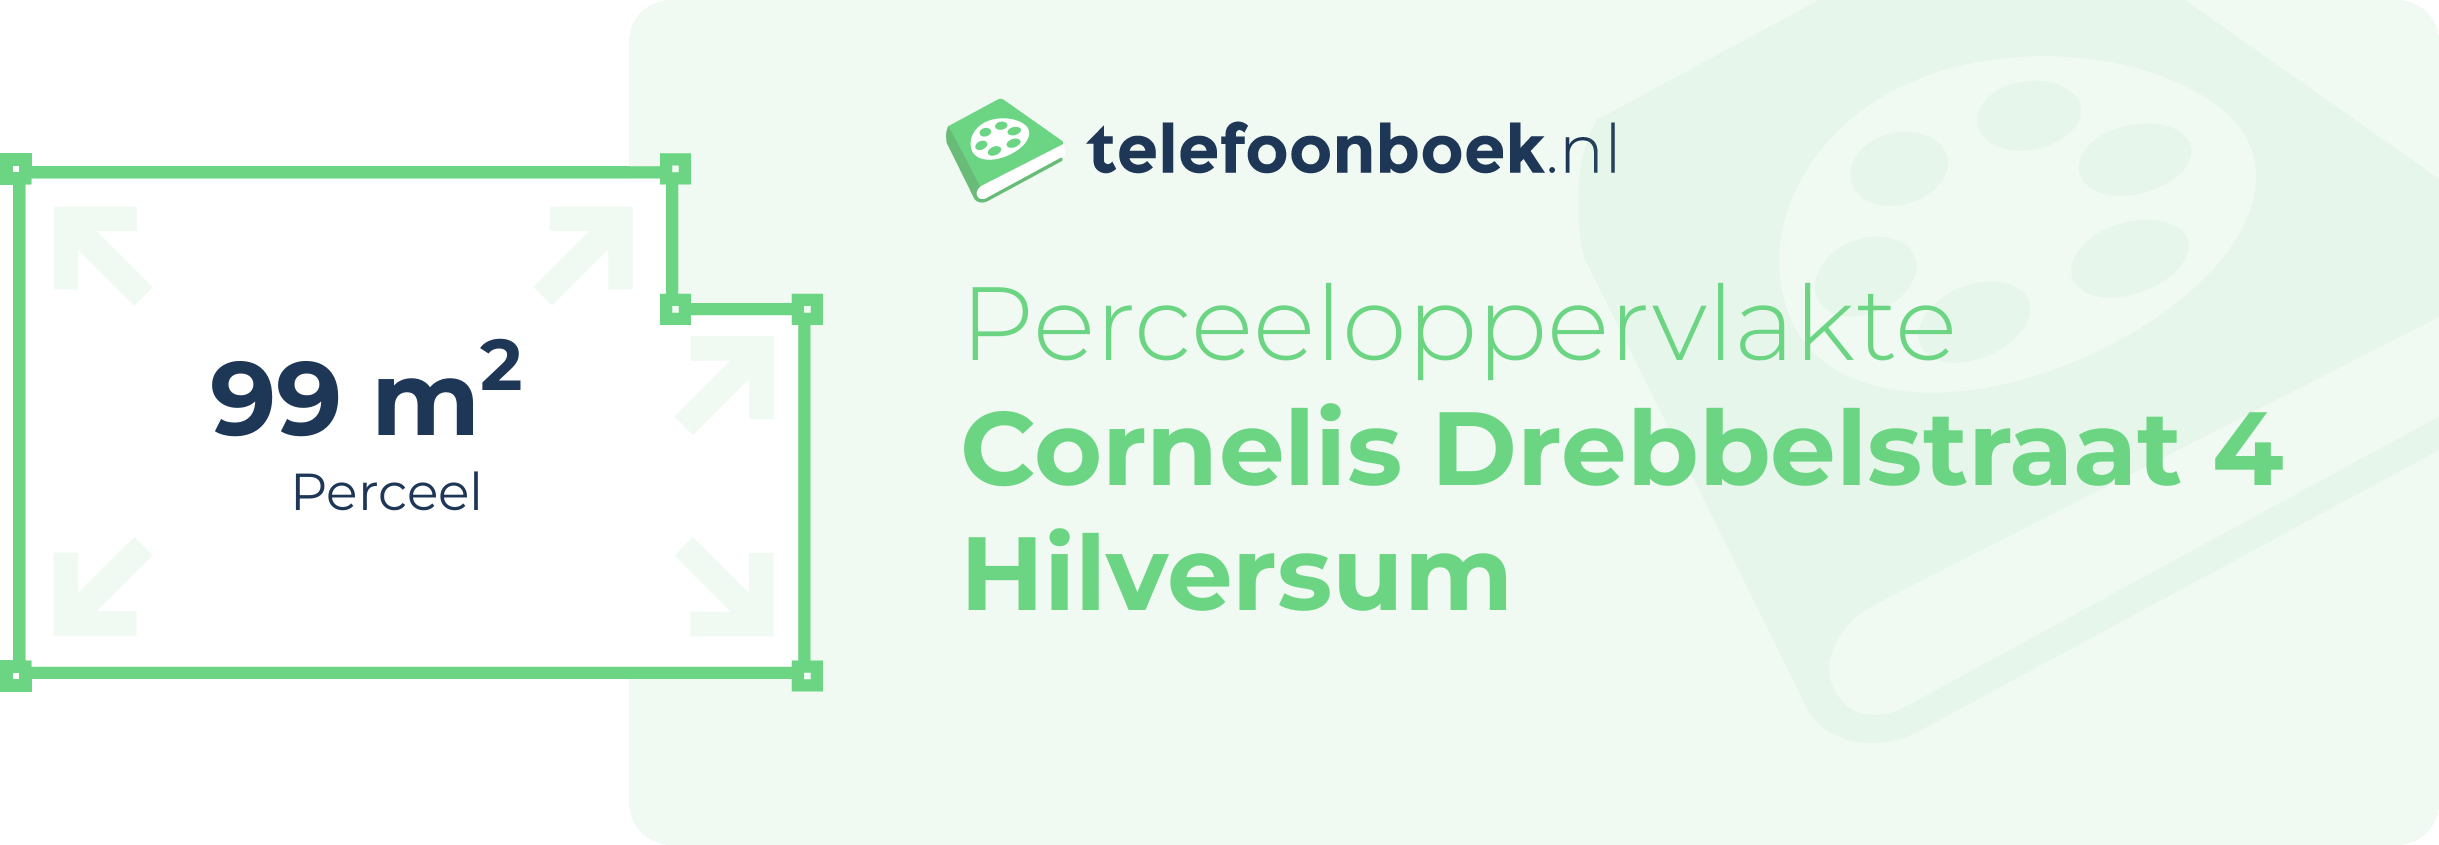 Perceeloppervlakte Cornelis Drebbelstraat 4 Hilversum